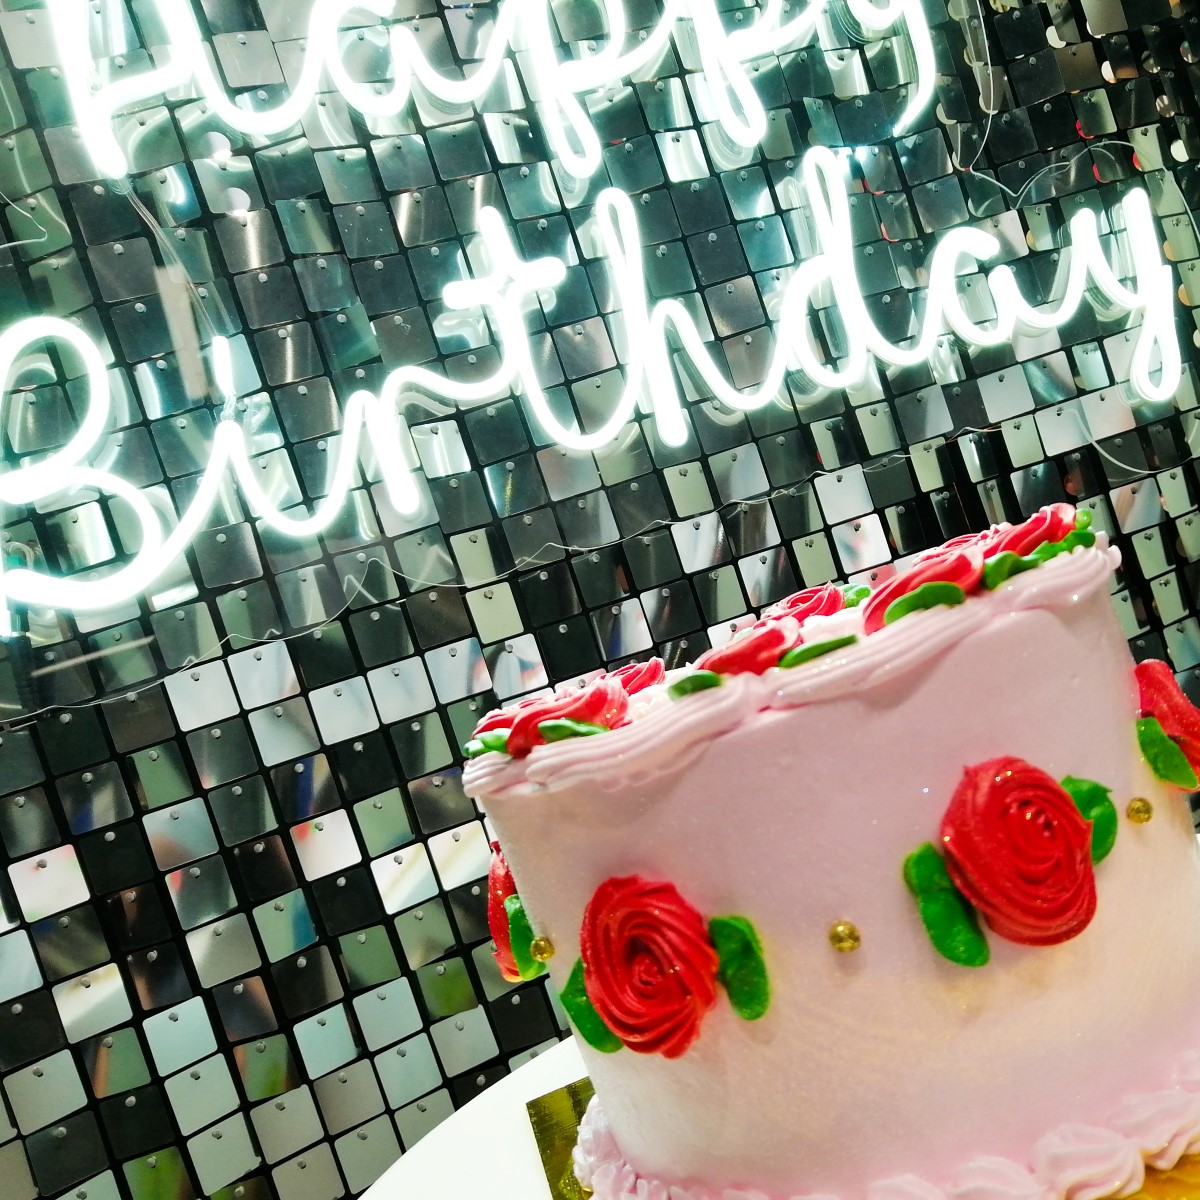 Pastel Rosas Happy Birthday – Decova event